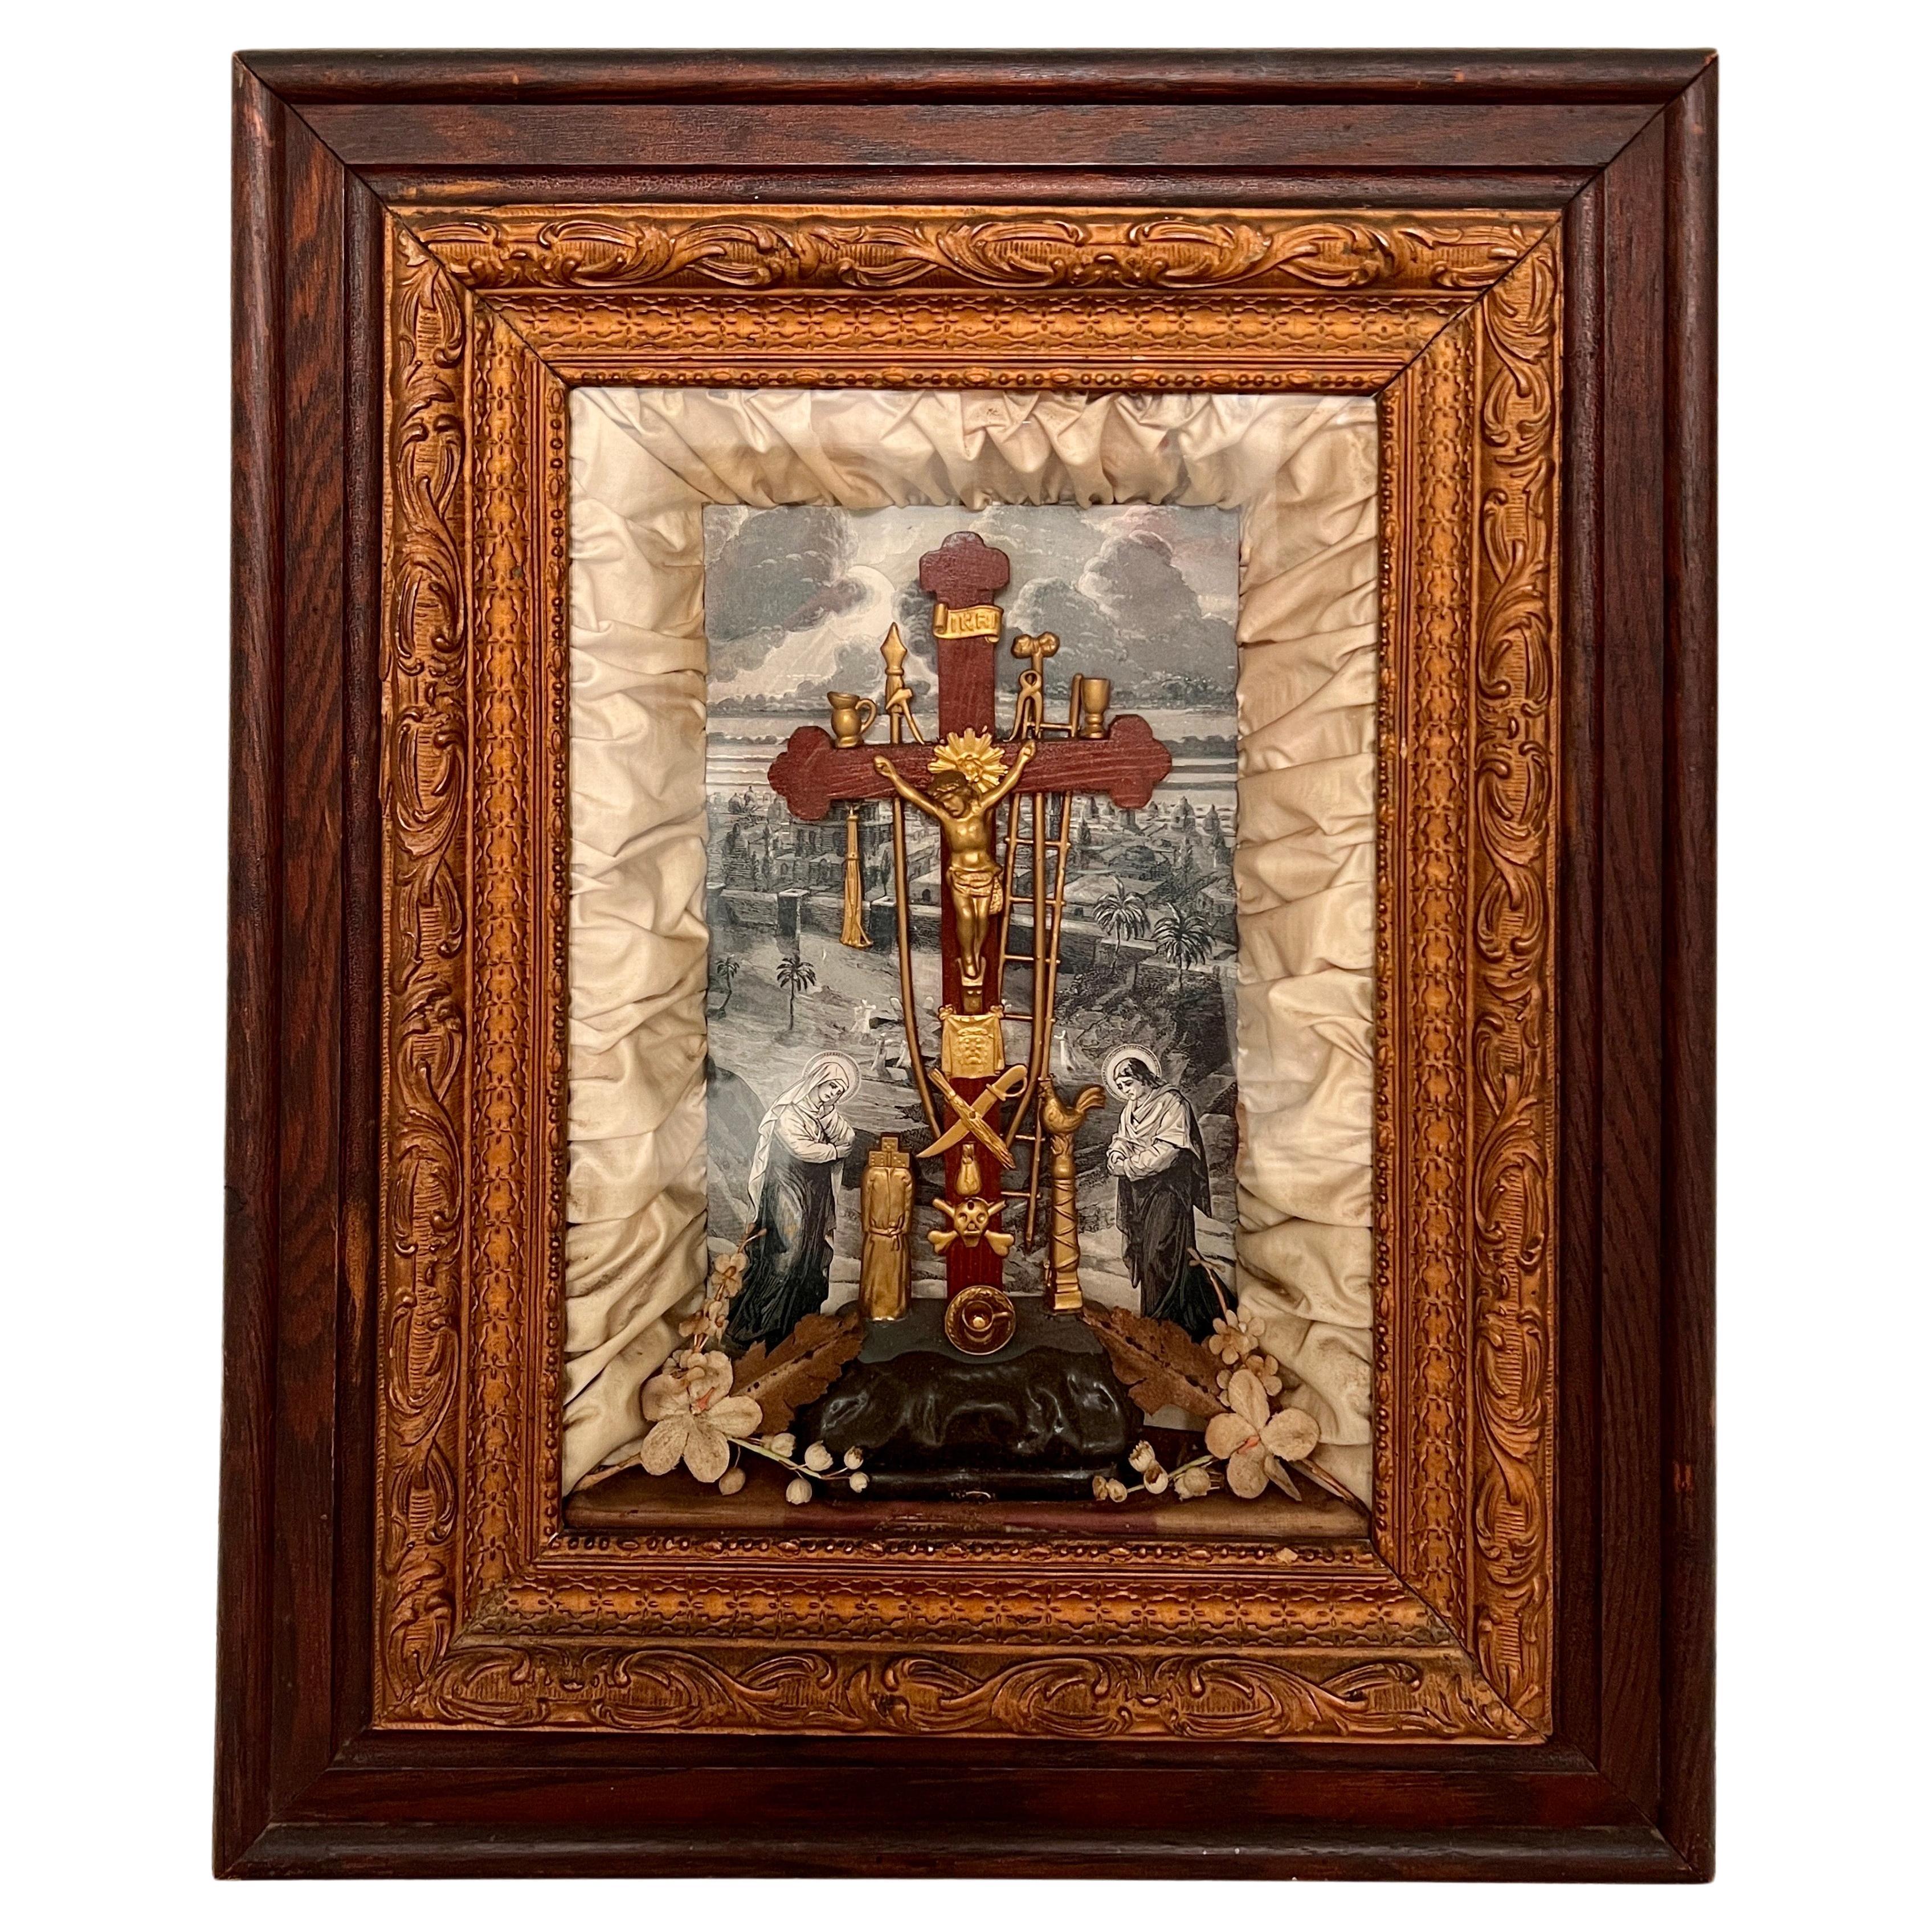 Antike viktorianische Schaufensterschachtel mit religiöser Kruzifix-Szene, um 1850